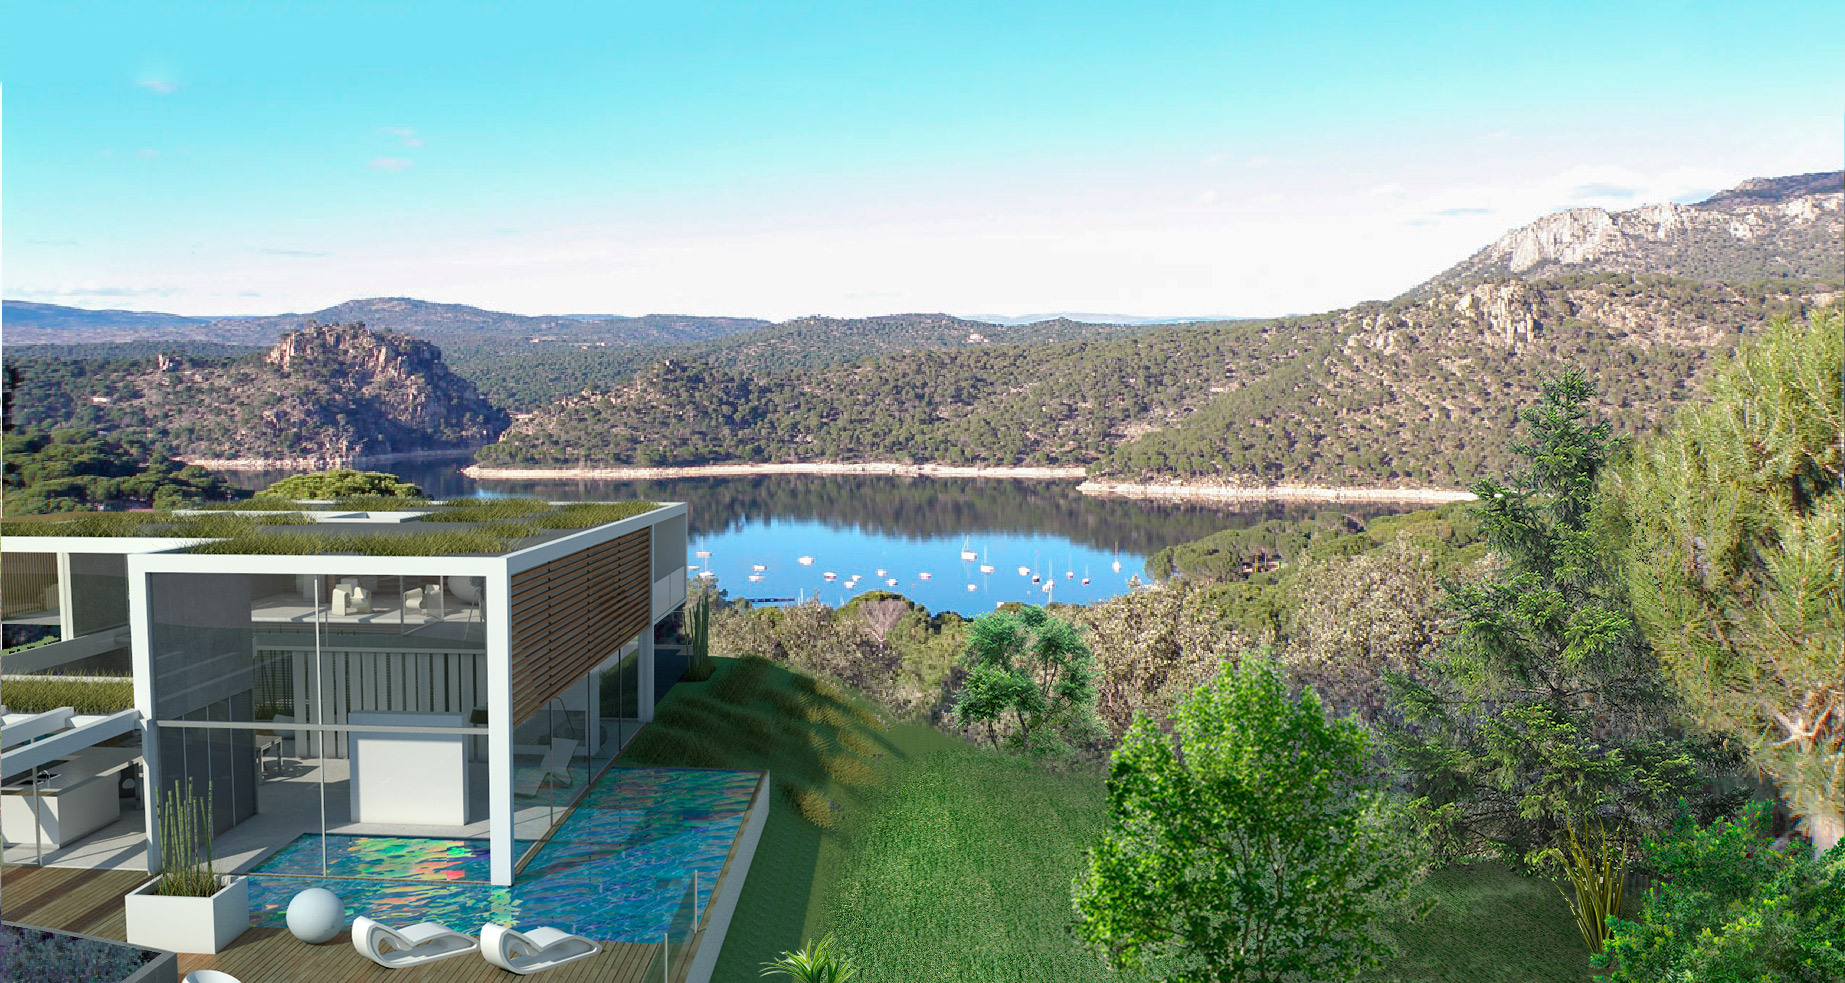 modelo-de-renderizado-fotorrealista-con-vistas-al-lago-y-al-bosque-con-piscina-terraza-ventanales-moderno-15